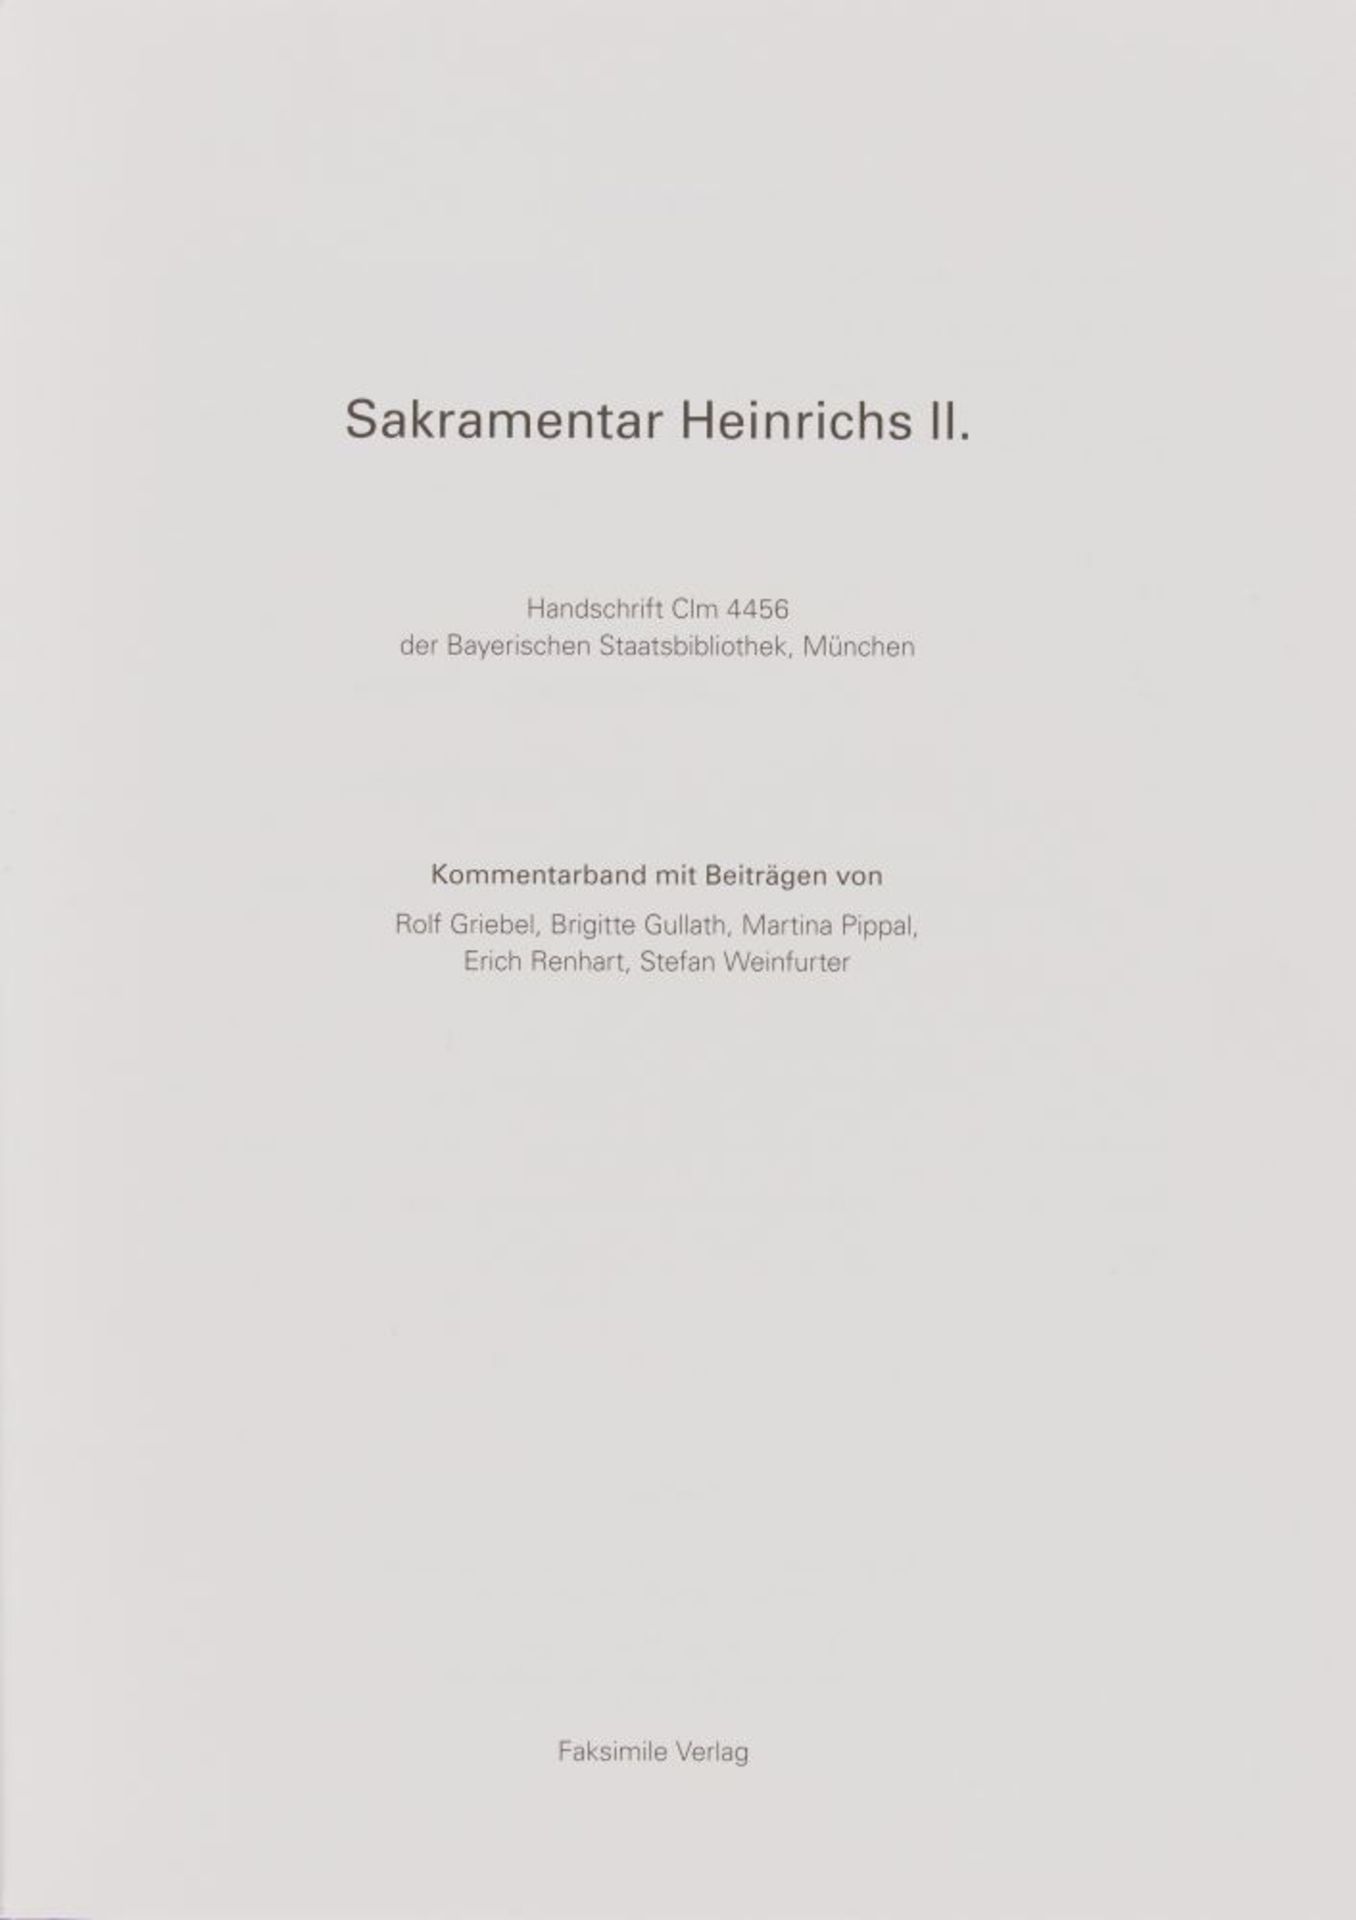 Sakramentar Heinrichs II. Faksimile.2 Bde. Gütersloh und Mchn 2010. - 76/333 Ex. - Bild 2 aus 2